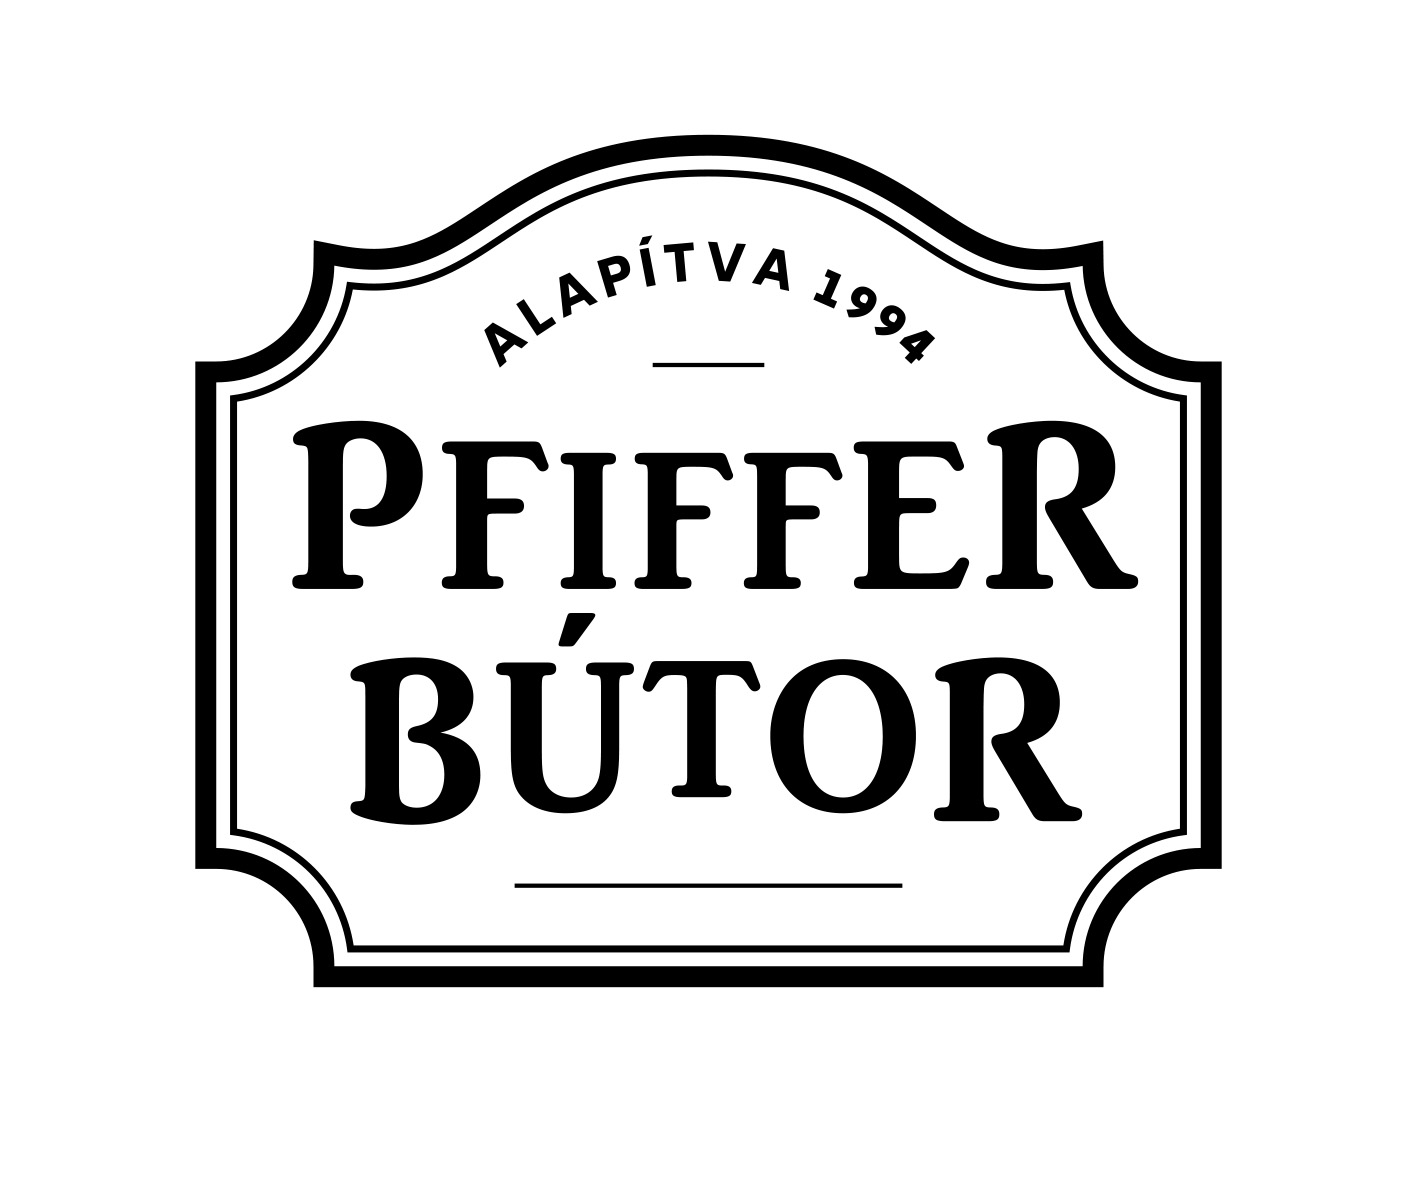 PFIFFER BÚTOR MÓR